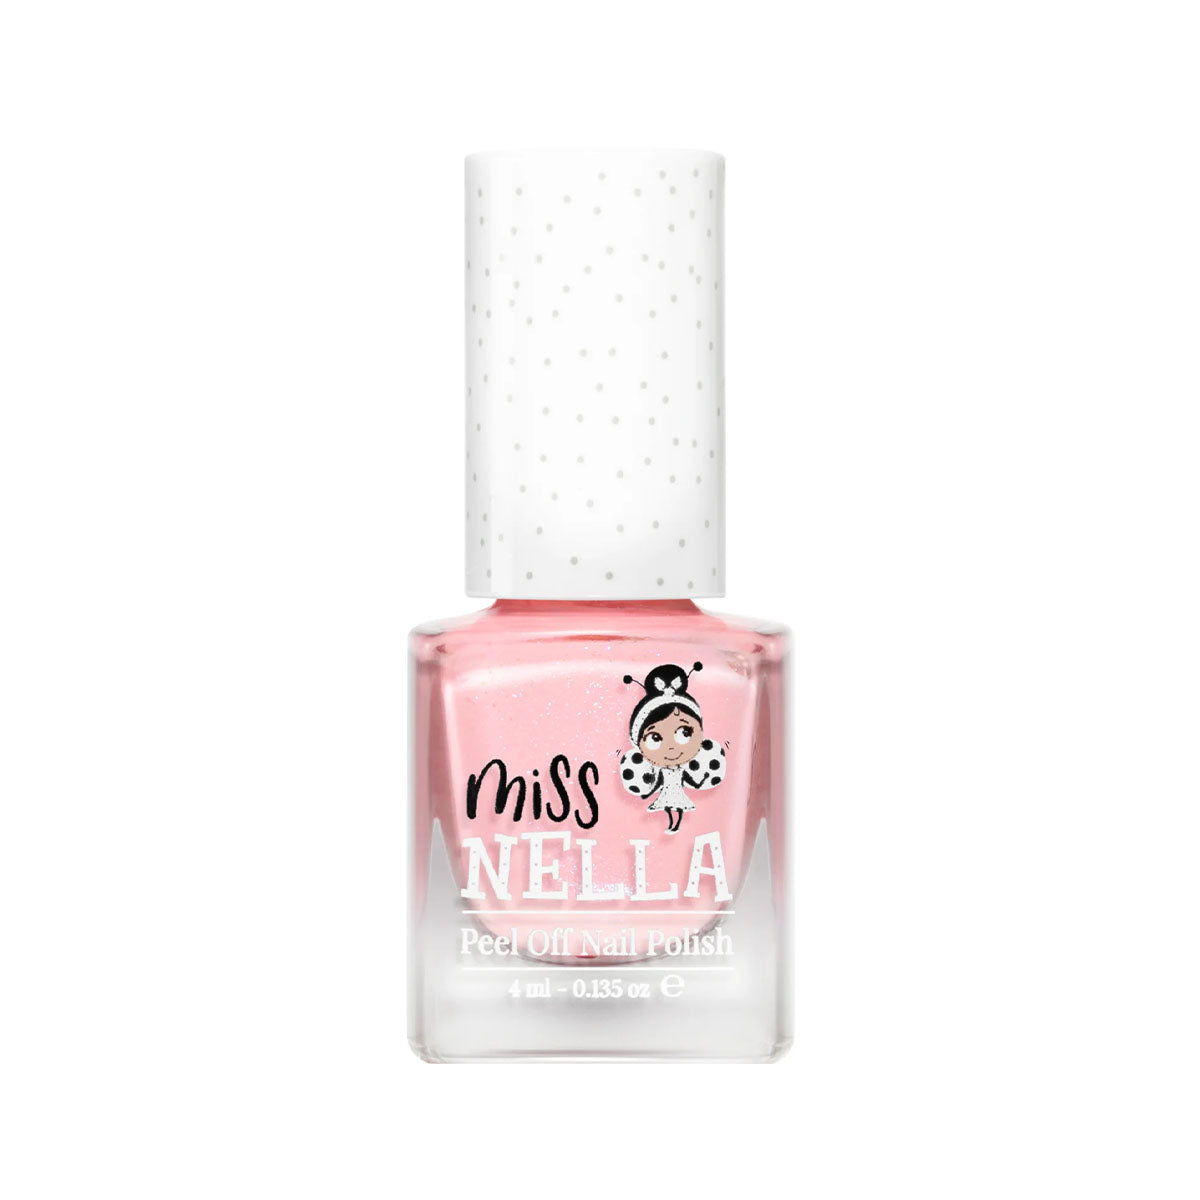 Laat de nageltjes van jouw kindje shinen met de nagellak cheeky bunny van het merk Miss Nella. De peel off nagellak is speciaal ontworpen voor kinderen en is vrij van chemicaliën. In verschillende kleuren. VanZus